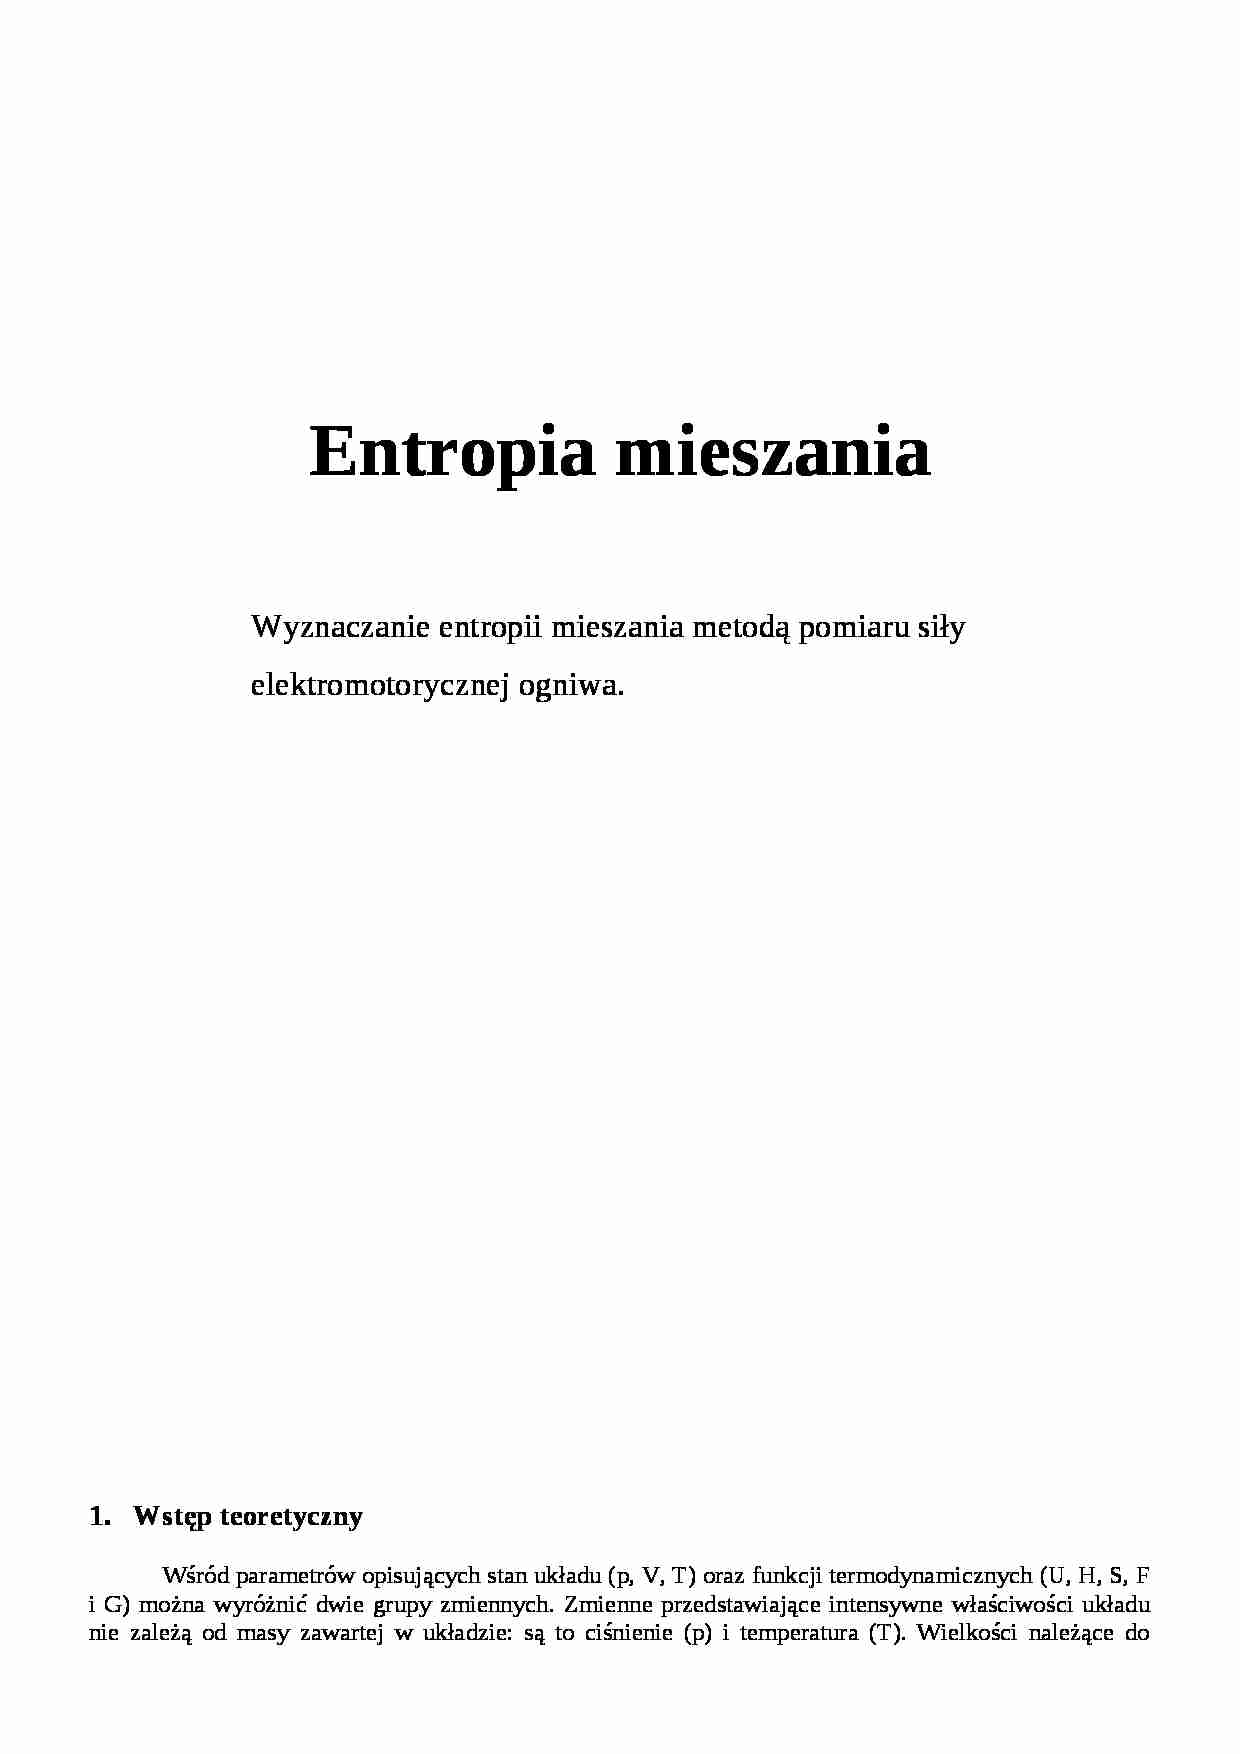 Entropia mieszania - omówienie zagadnienia - strona 1